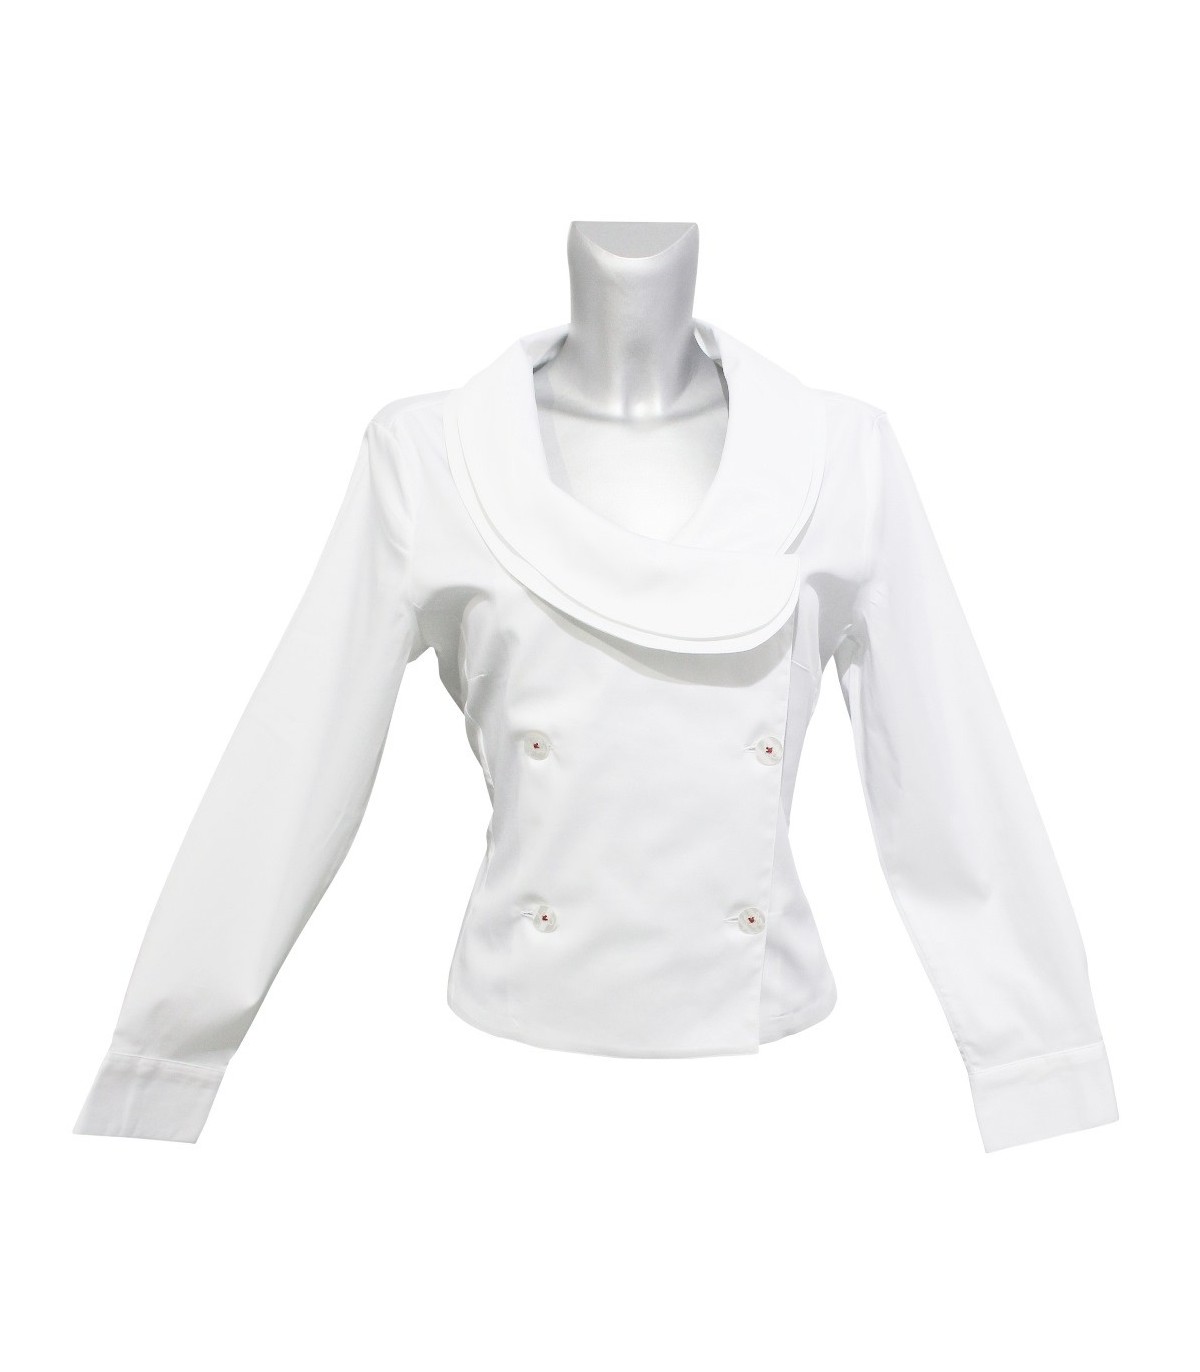 Kurz geschnittene Bluse in weiß 3 Knöpfe) Knopfleiste Kragen (jeweils doppelter mit ausgefallenem und